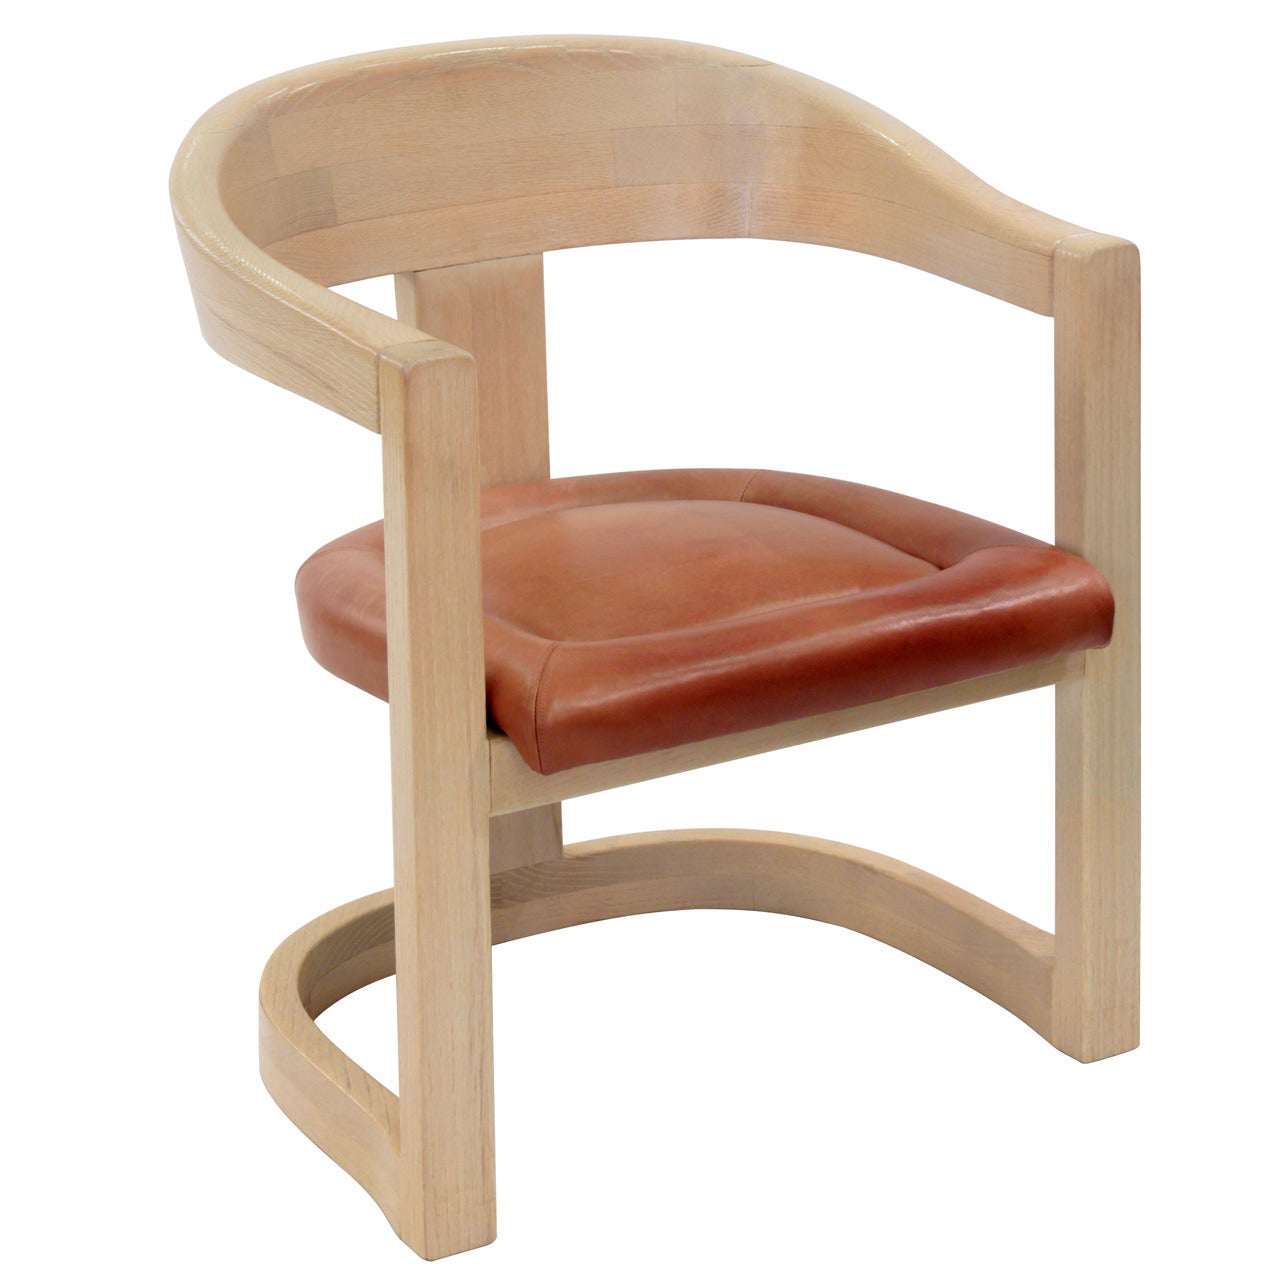 "Onassis Chair" in Dowel Wood by Karl Springer